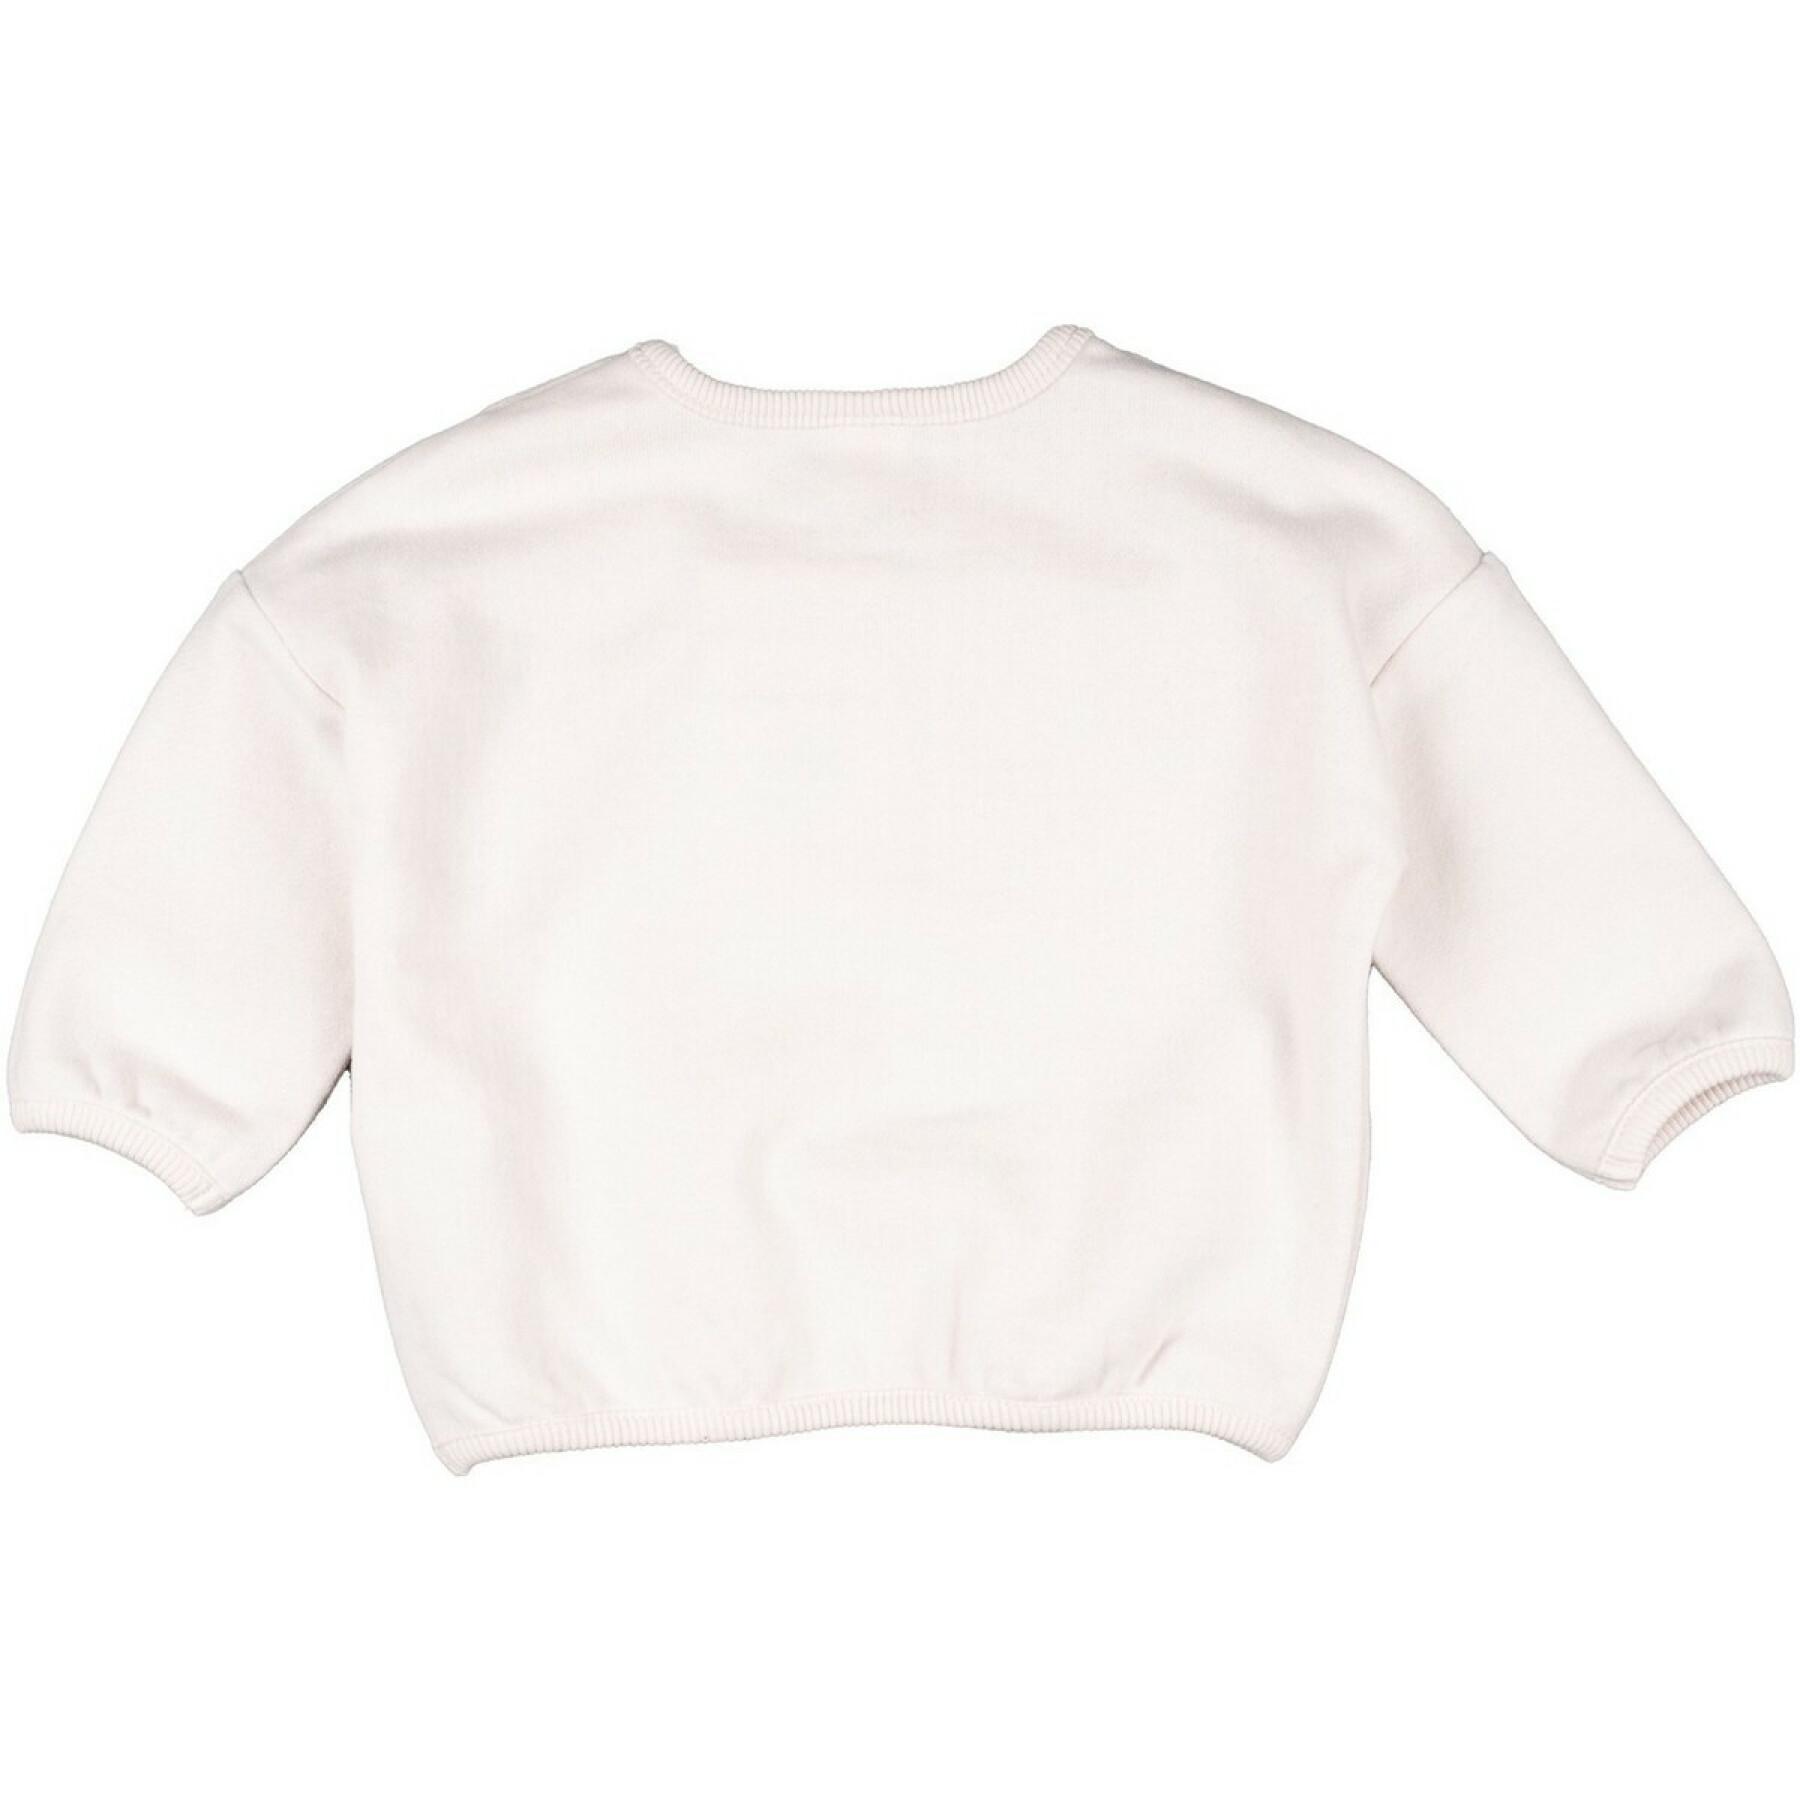 Baby-Sweatshirt Charanga Jonita